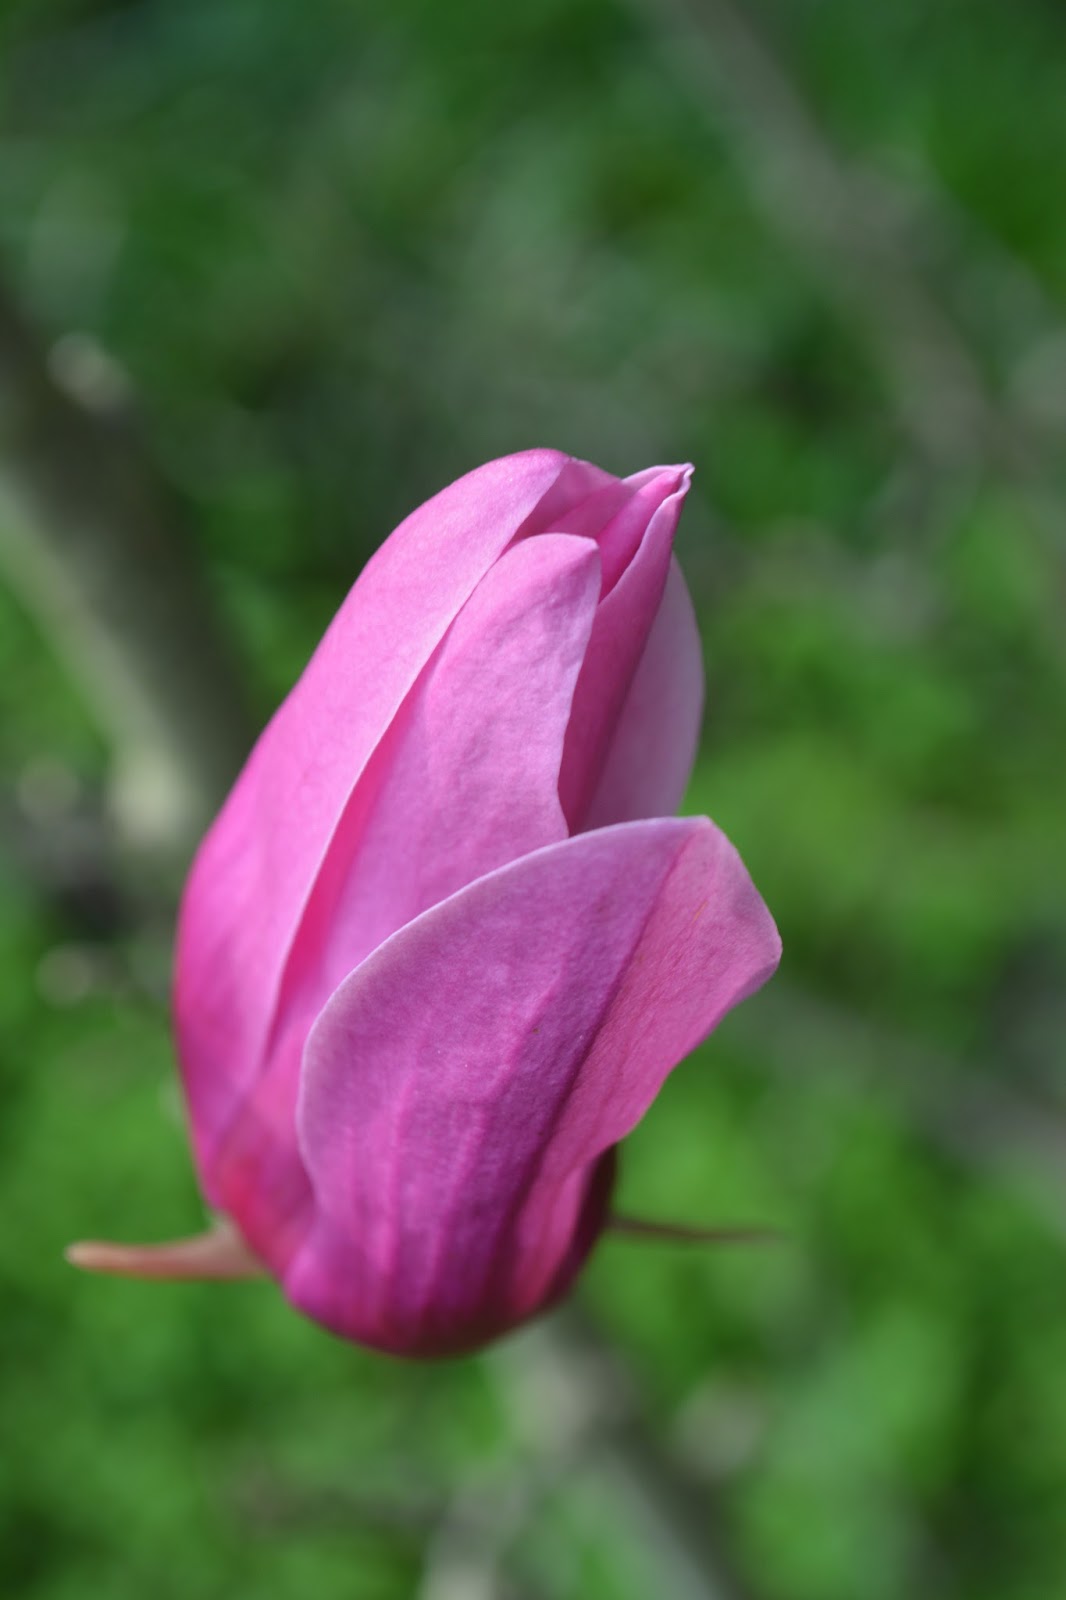 Magnolia púrpura. Flor tonos rosas, arbusto proterante. Magnolia liliiflora.